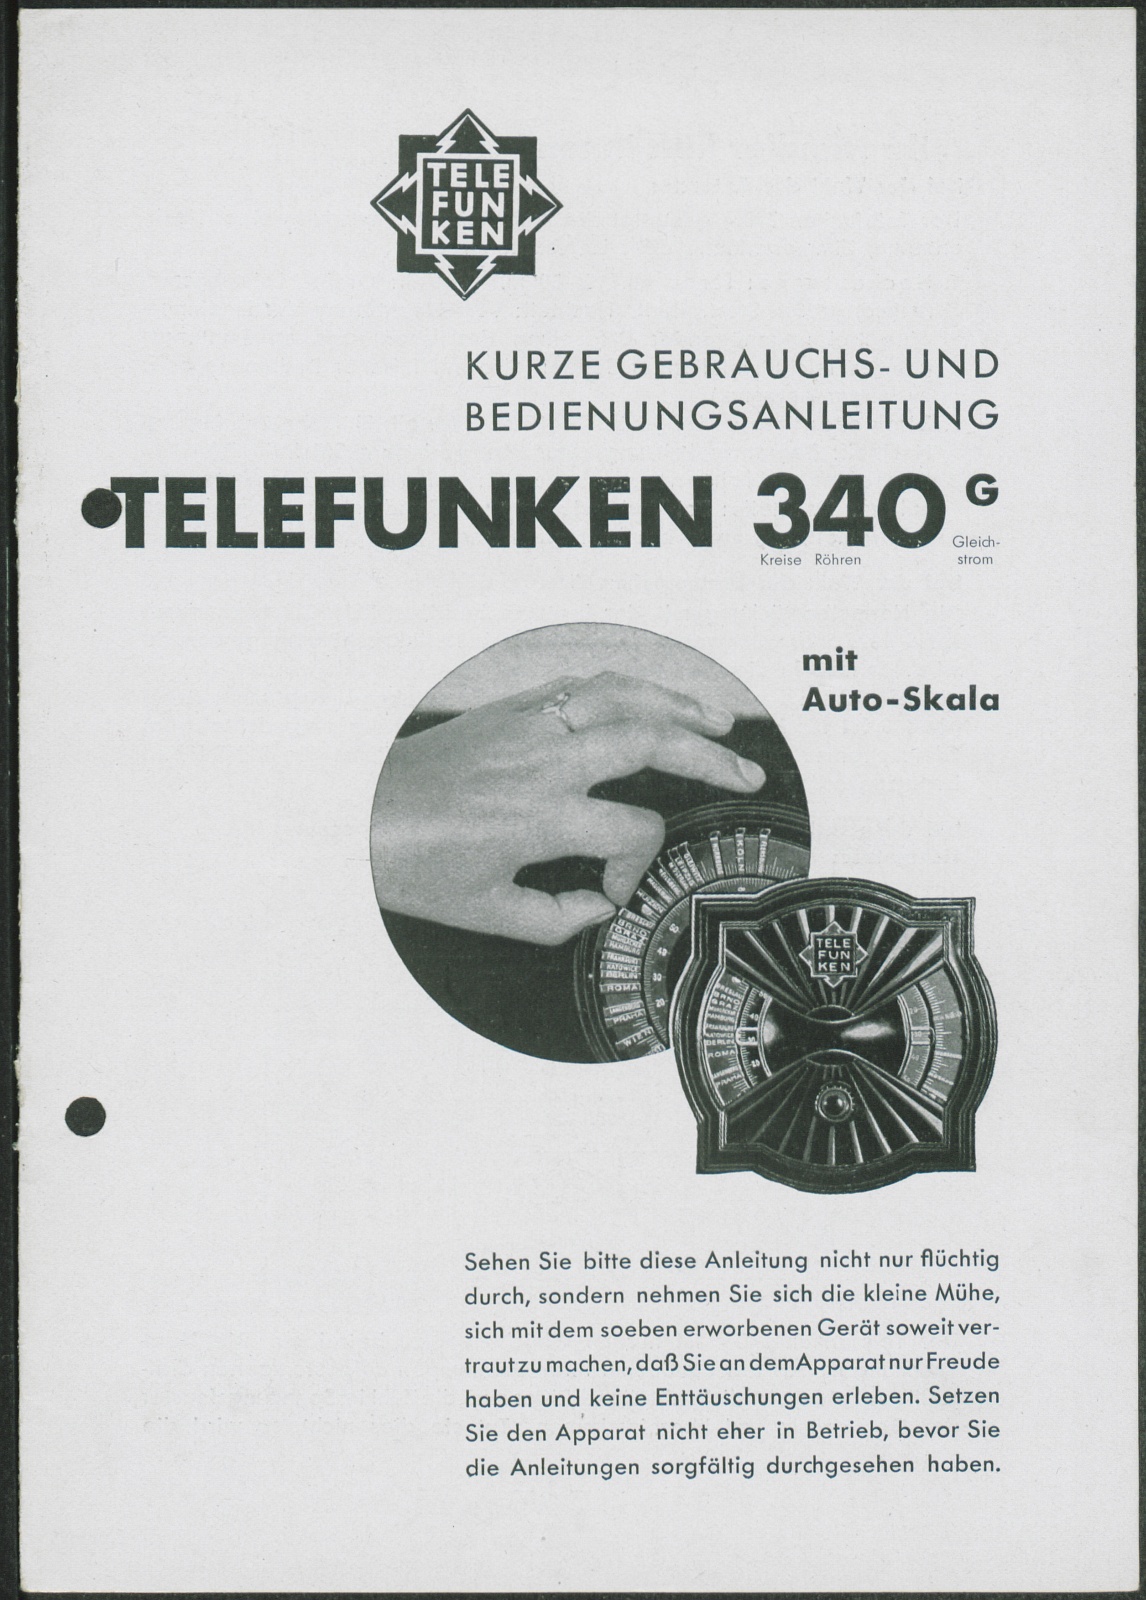 Bedienungsanleitung: Kurze Gebrauchs- und Bedienungsanleitung Telefunken 340 G mit Auto-Skala (Stiftung Deutsches Technikmuseum Berlin CC0)